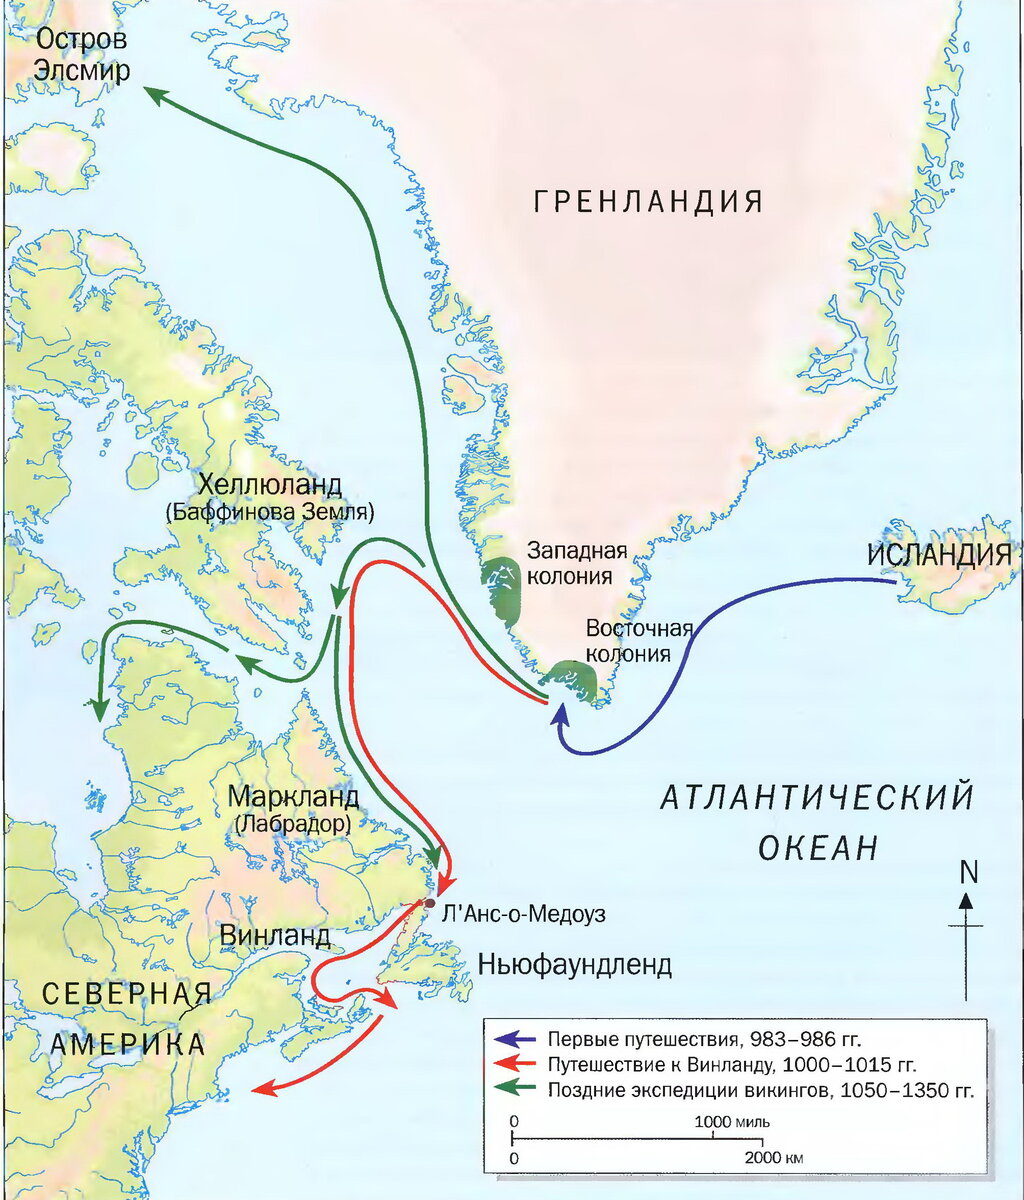 Путешествие викингов в Америку на карте